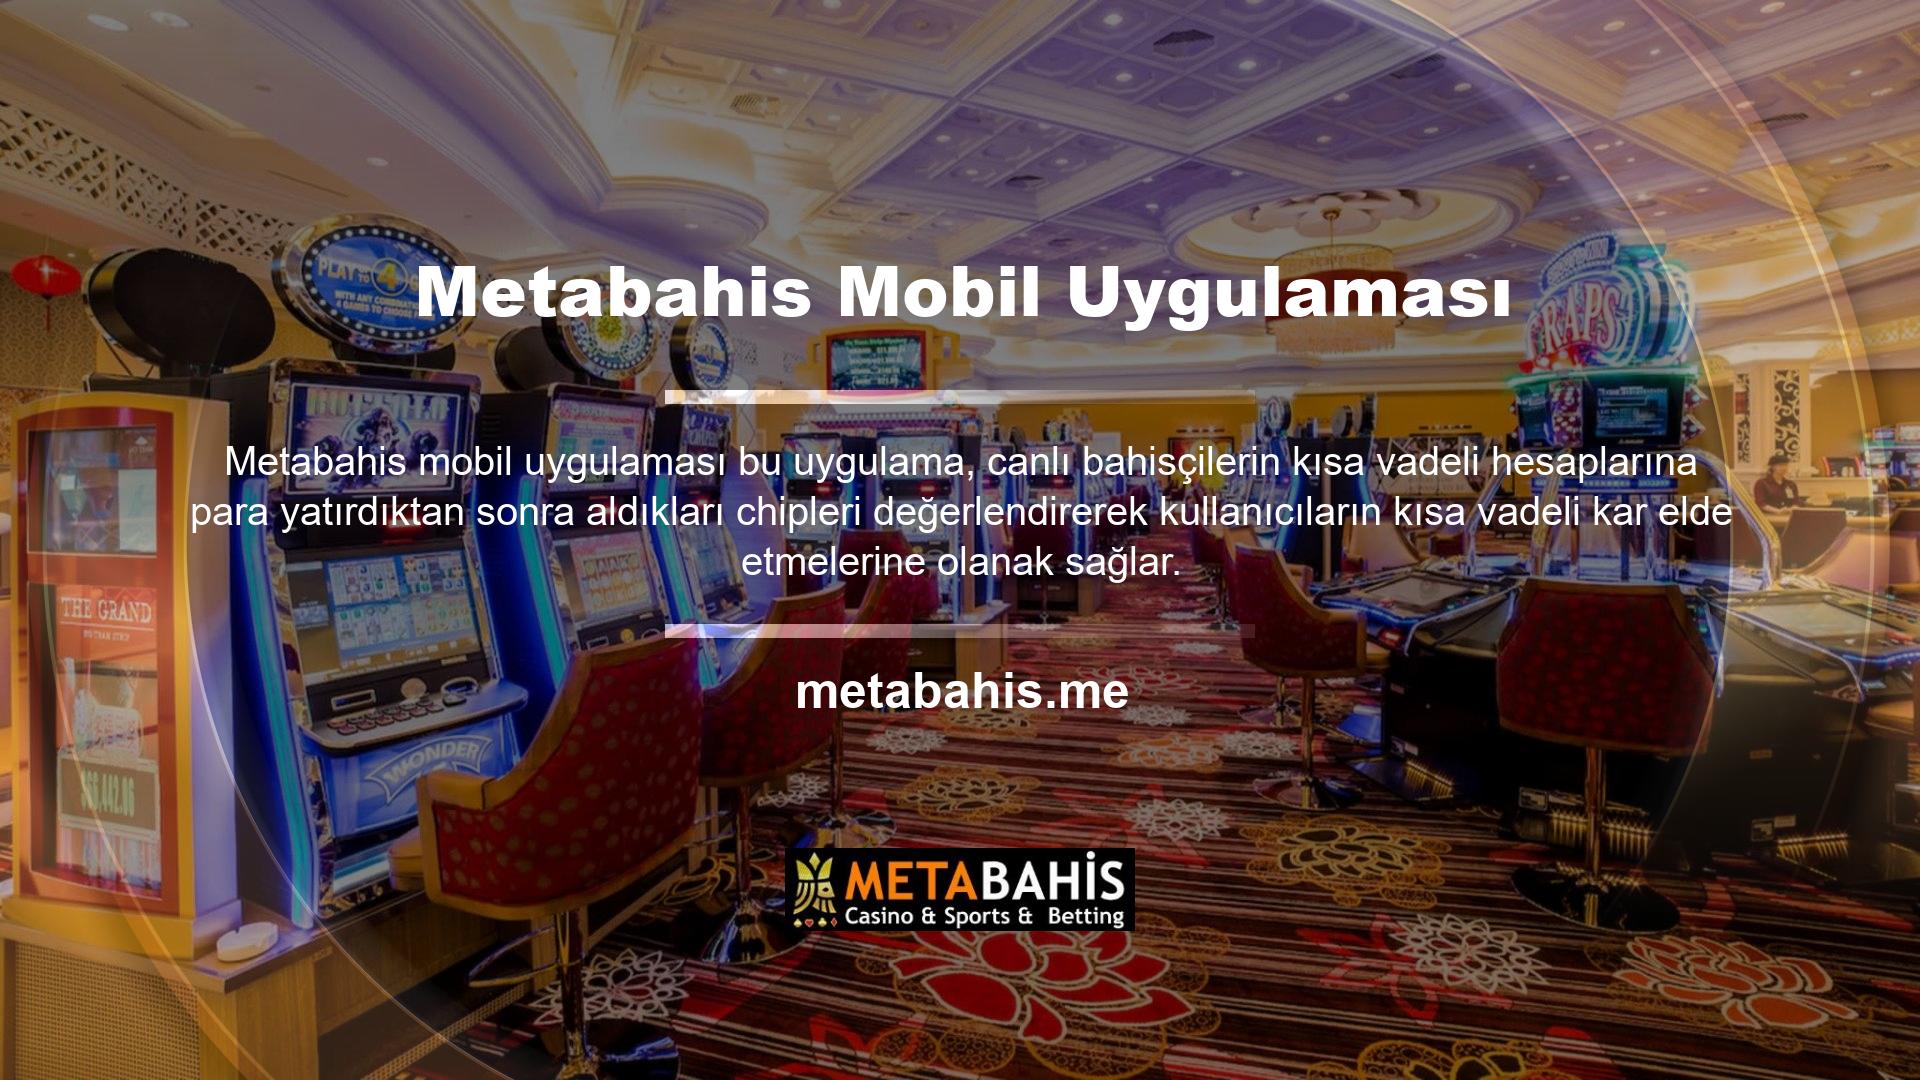 Metabahis mobil uygulaması bu uygulama ile güvenilir midir? Sitenin mobil uygulaması üzerinden para çeken kullanıcılar bunu saniyeler içerisinde gerçekleştirebilmektedir